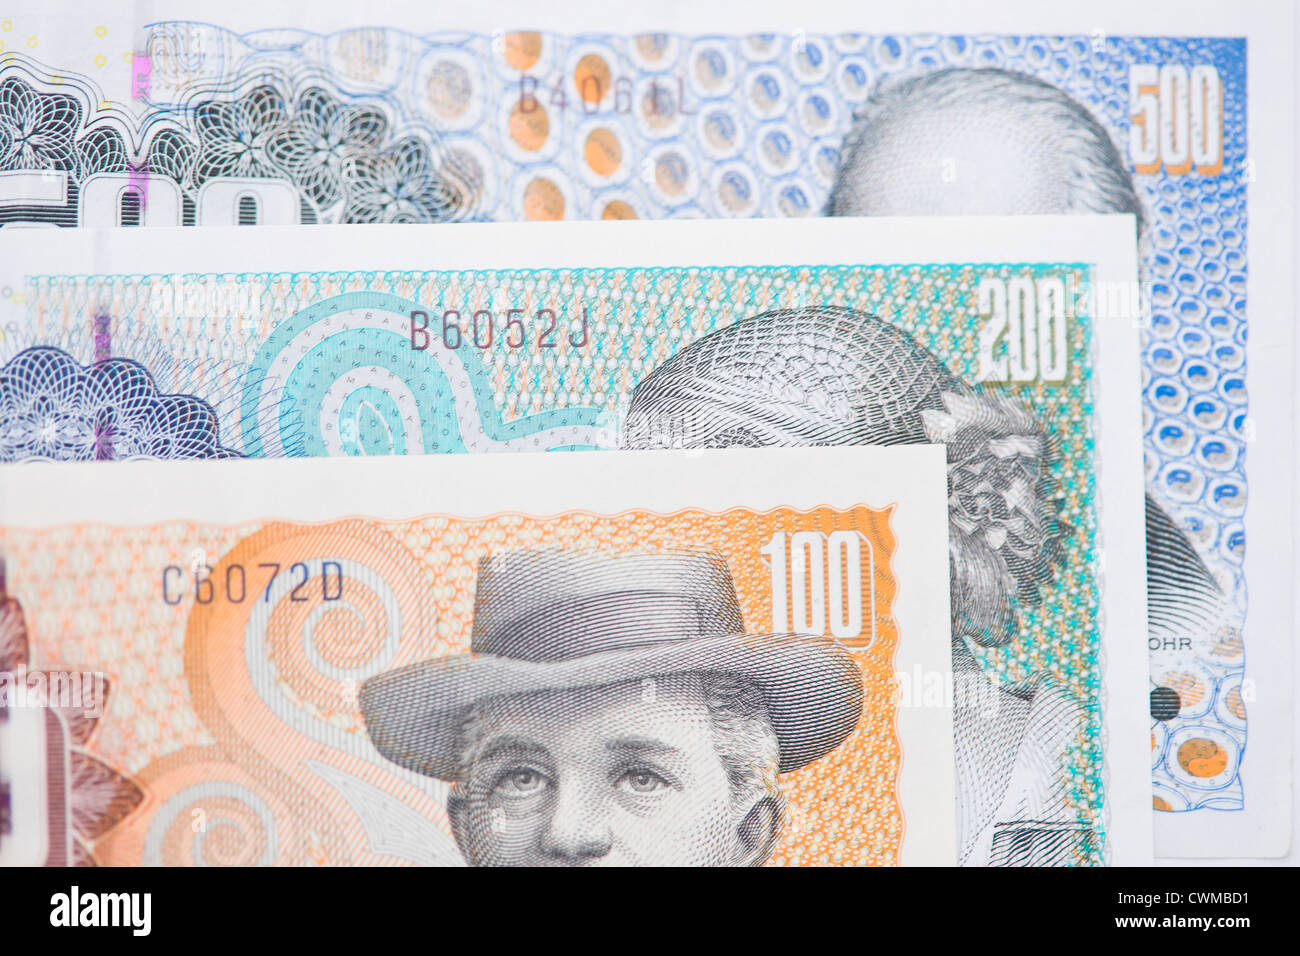 Danish krone note, close up Stock Photo